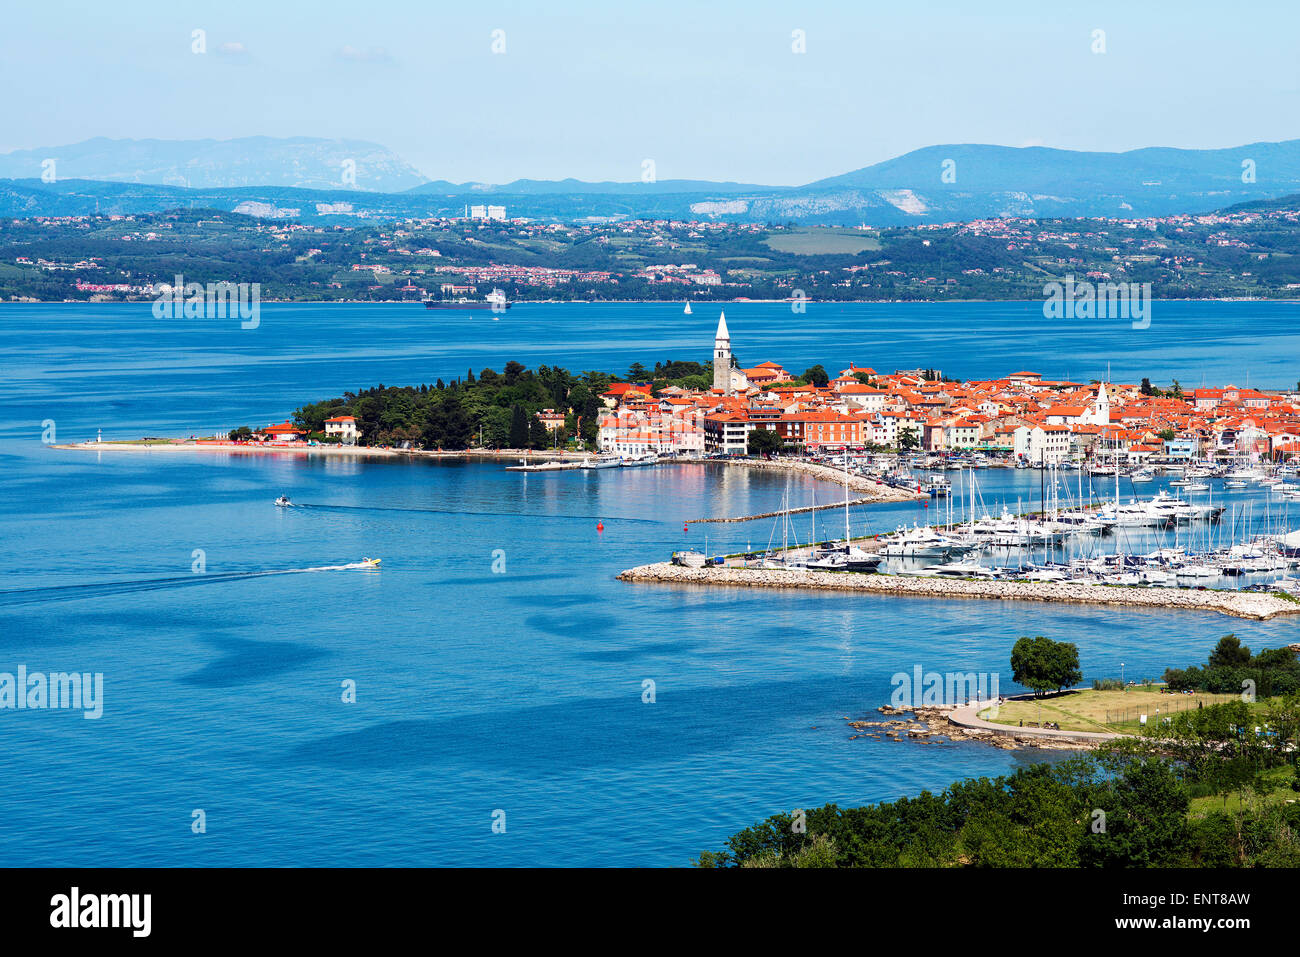 Beautiful coast town Izola - Slovenia from above Stock Photo